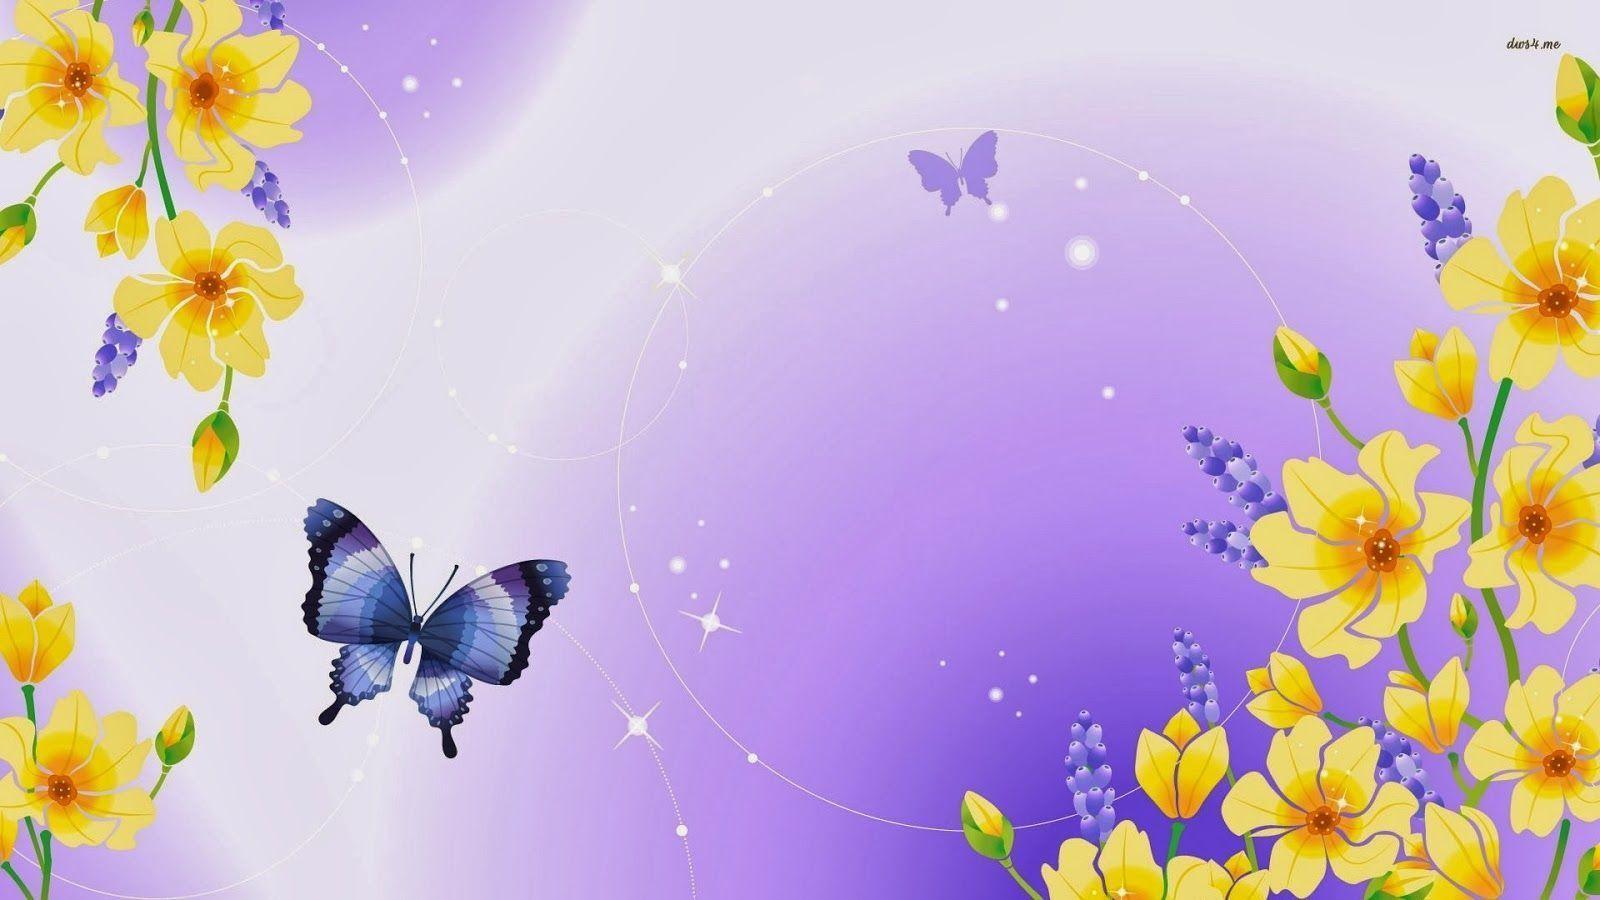 Cute Butterfly Image Wallpaper